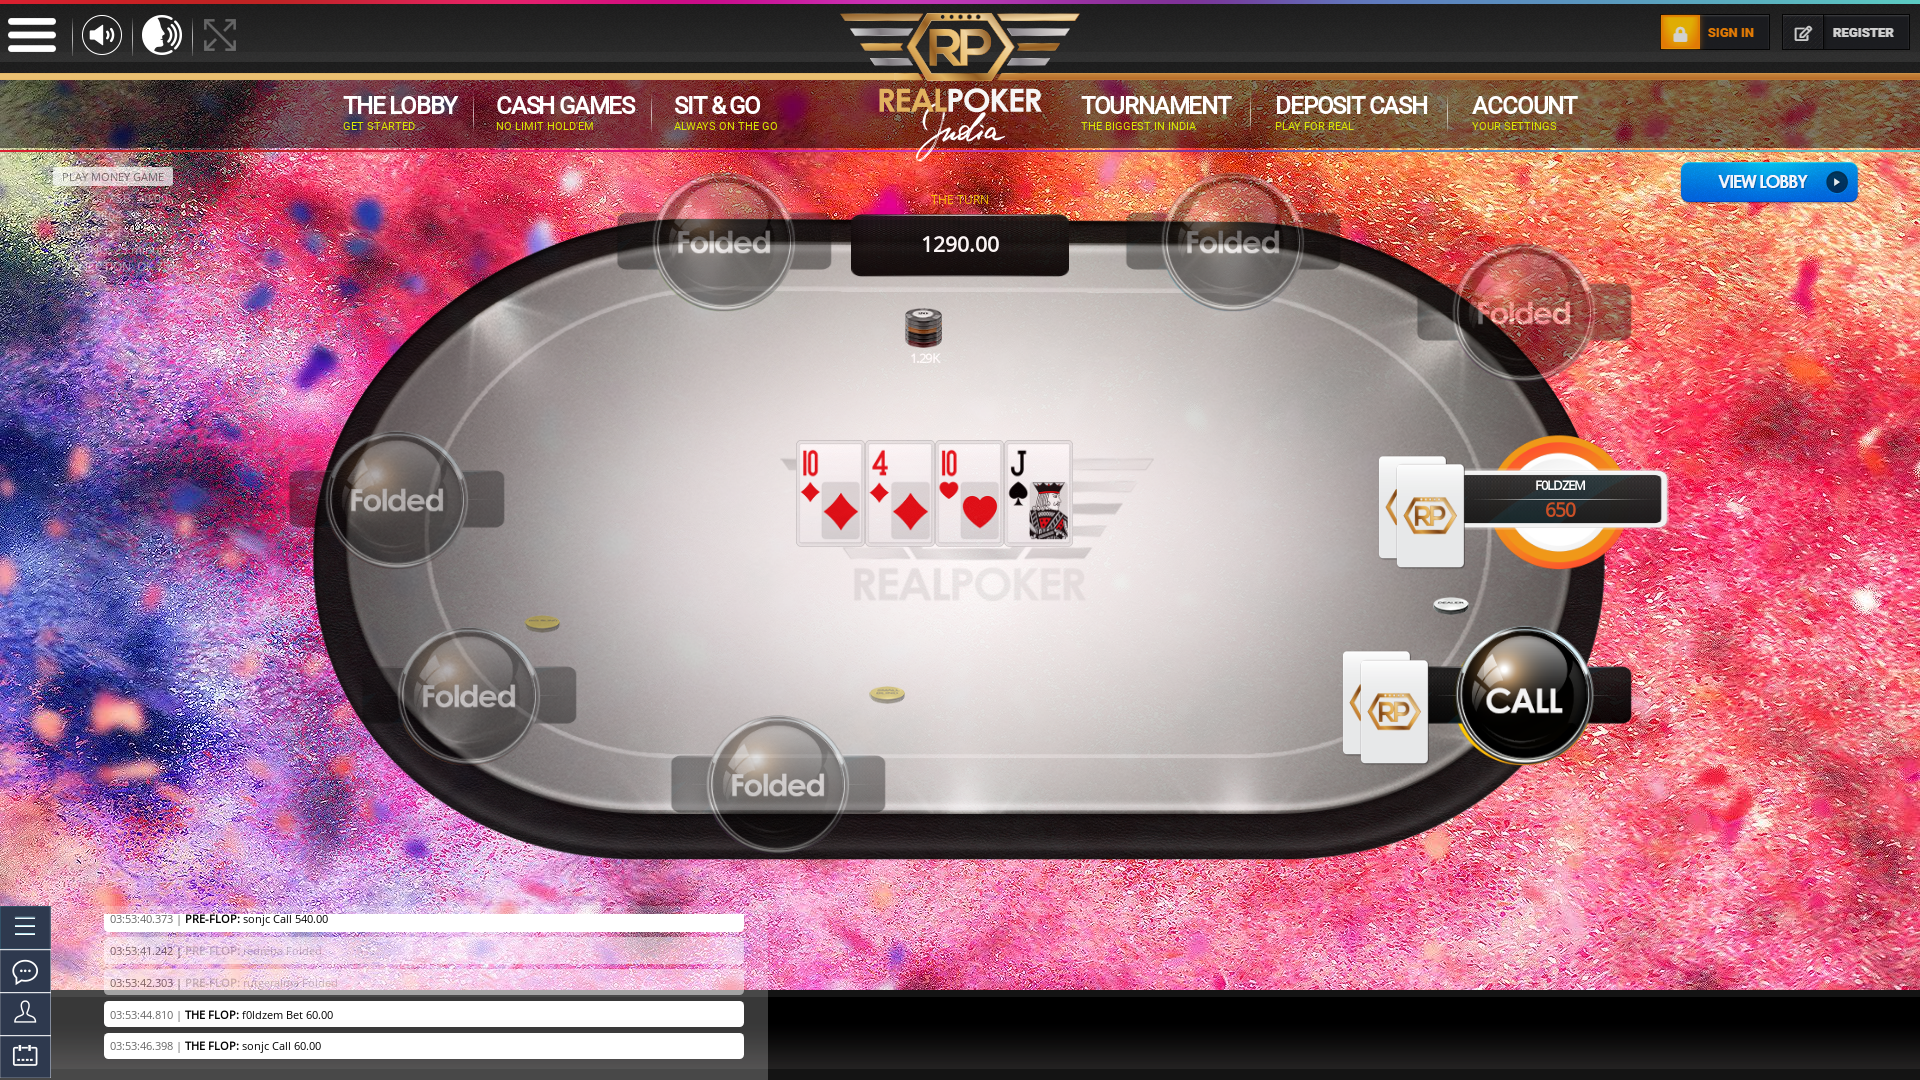 Noida online poker